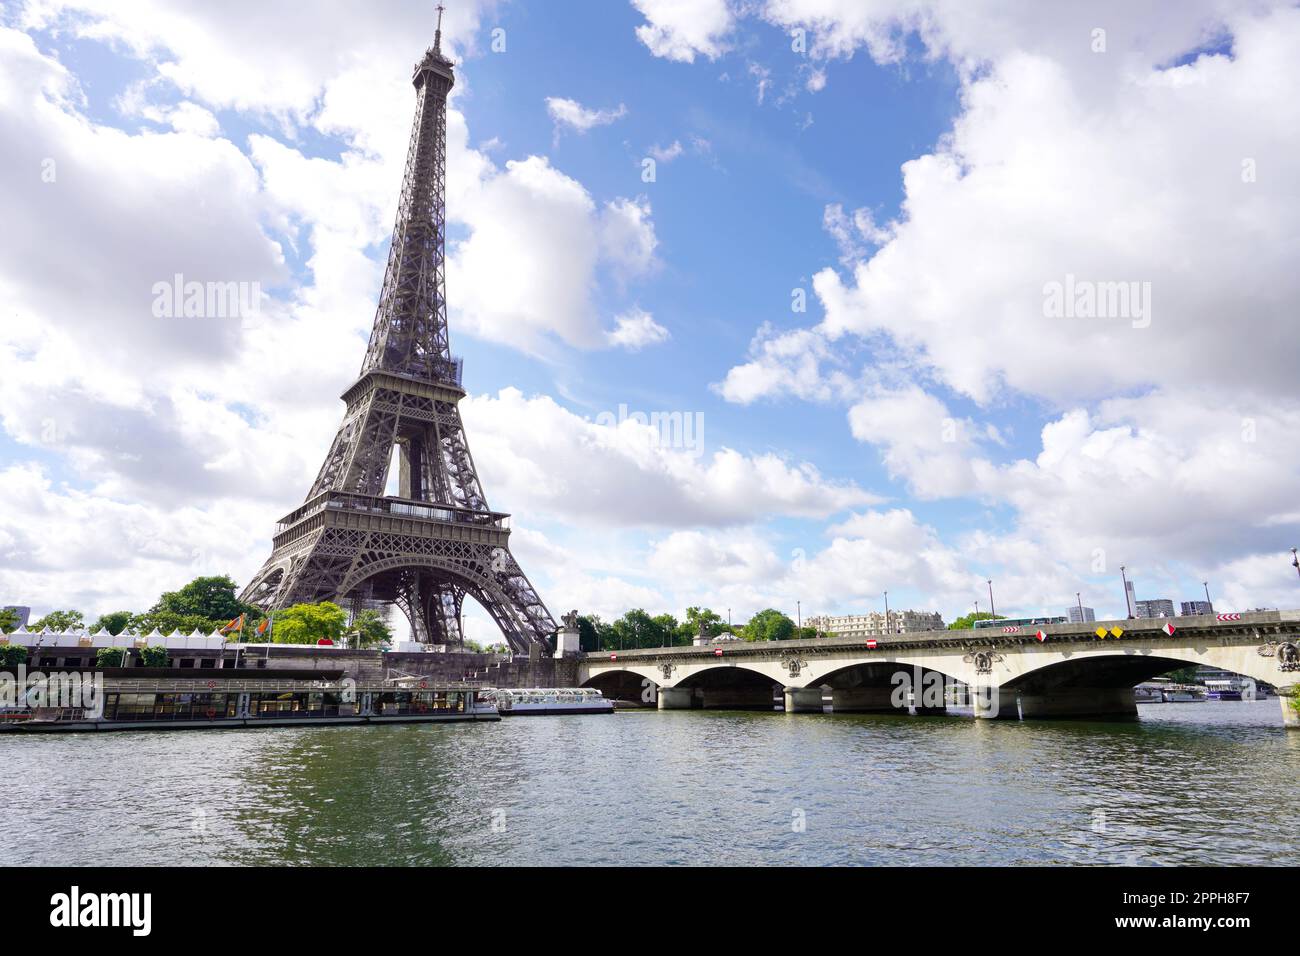 La Tour Eiffel et le Pont d'Iena sur la Seine à Paris, France Banque D'Images